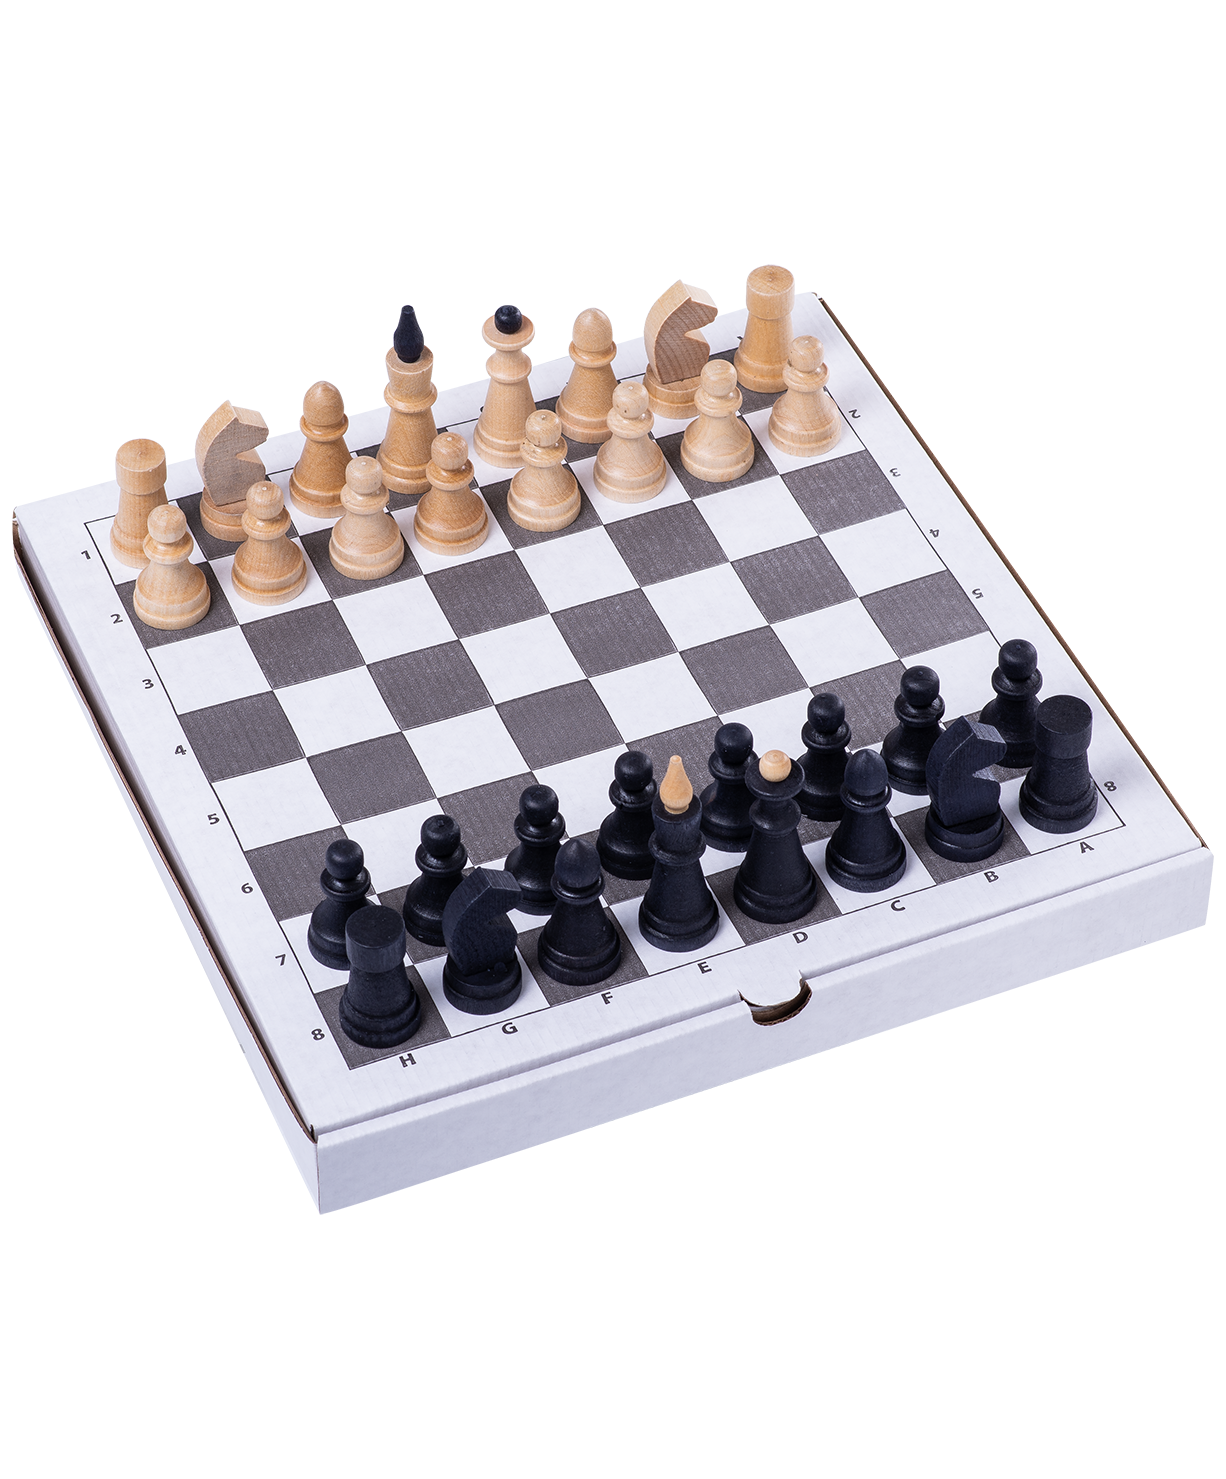 Шахматы обиходные (дерево) Классика с гофродоской (456-20)